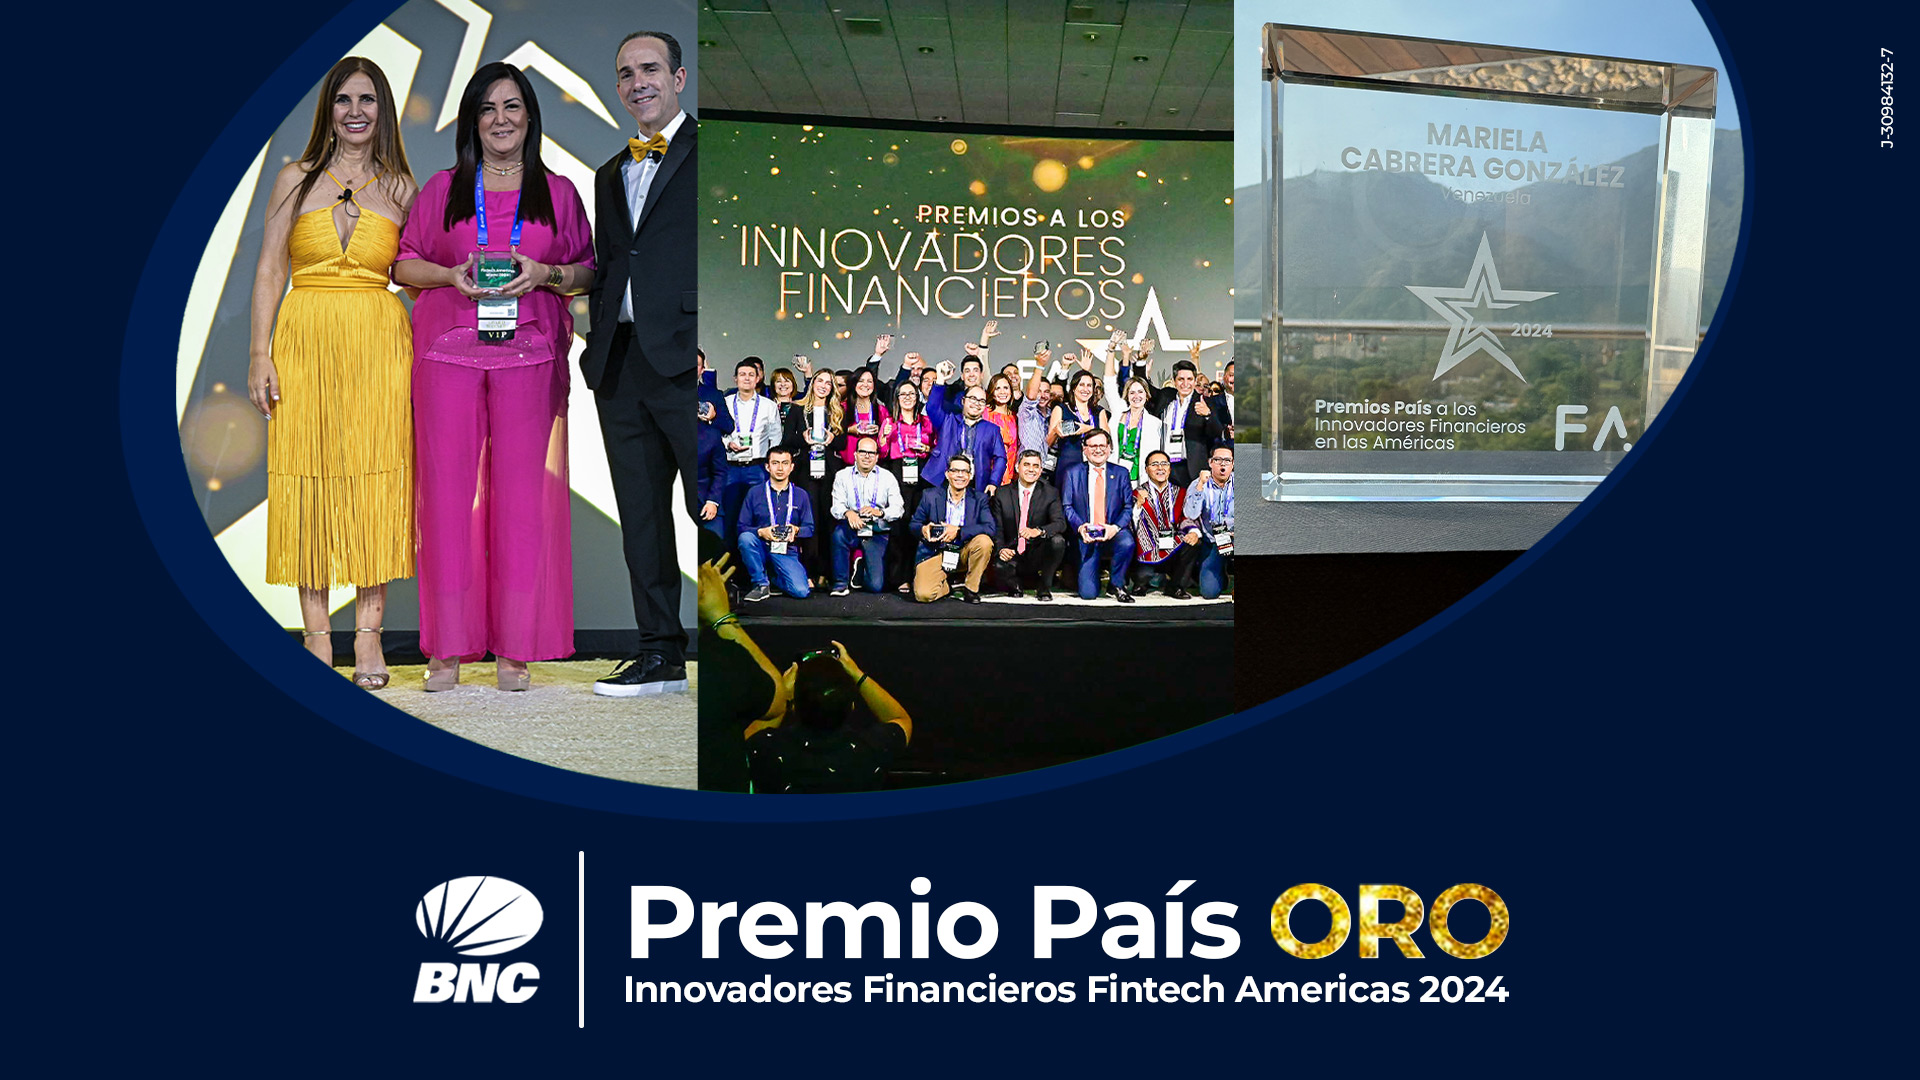 BNC recibió en Miami el premio “Fintech Americas” como líder en innovación